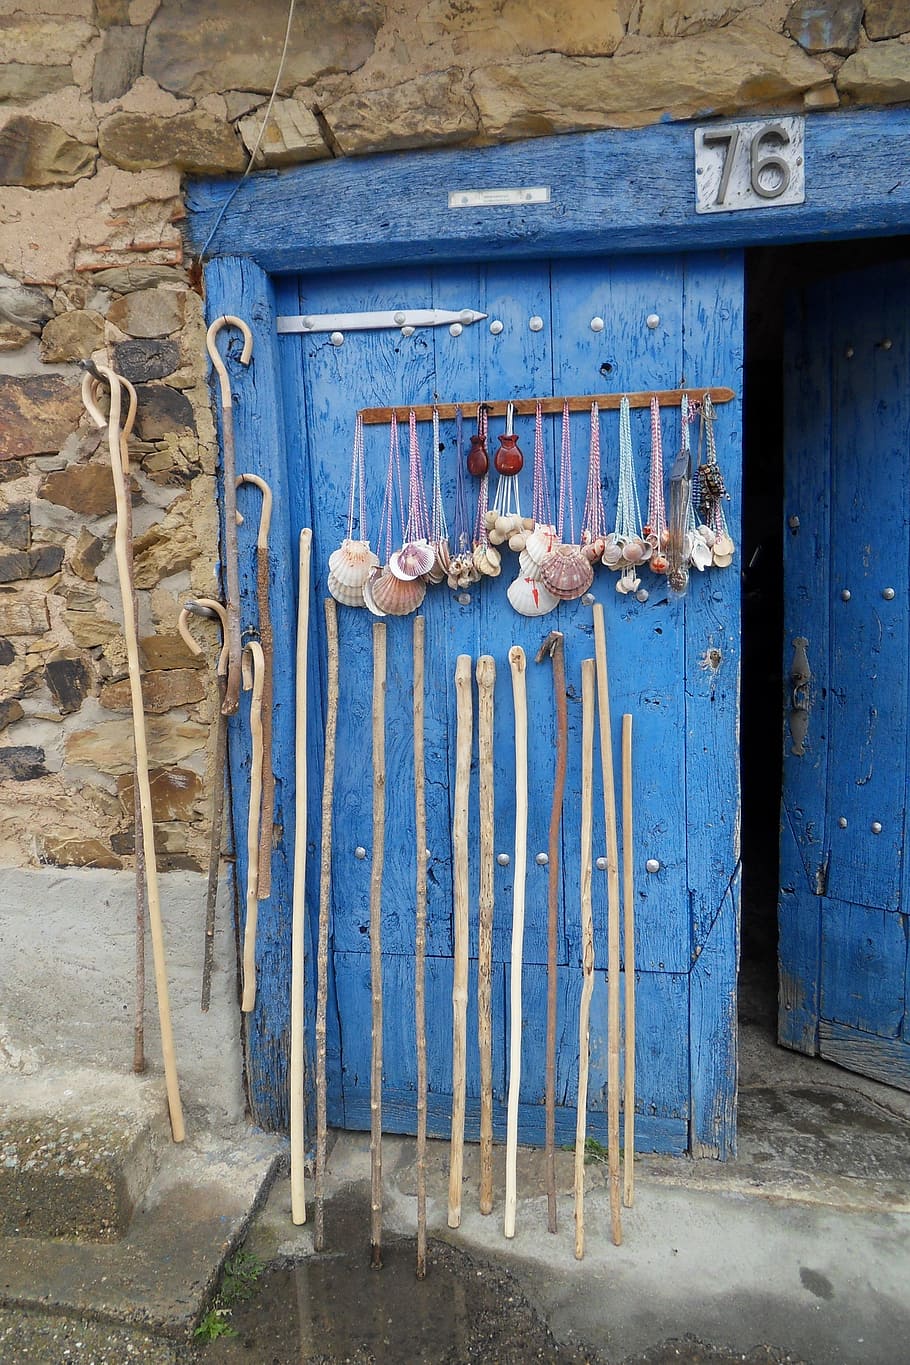 hand canes leaned on blue door, pilgrim, pilgrim rods, jakobsweg